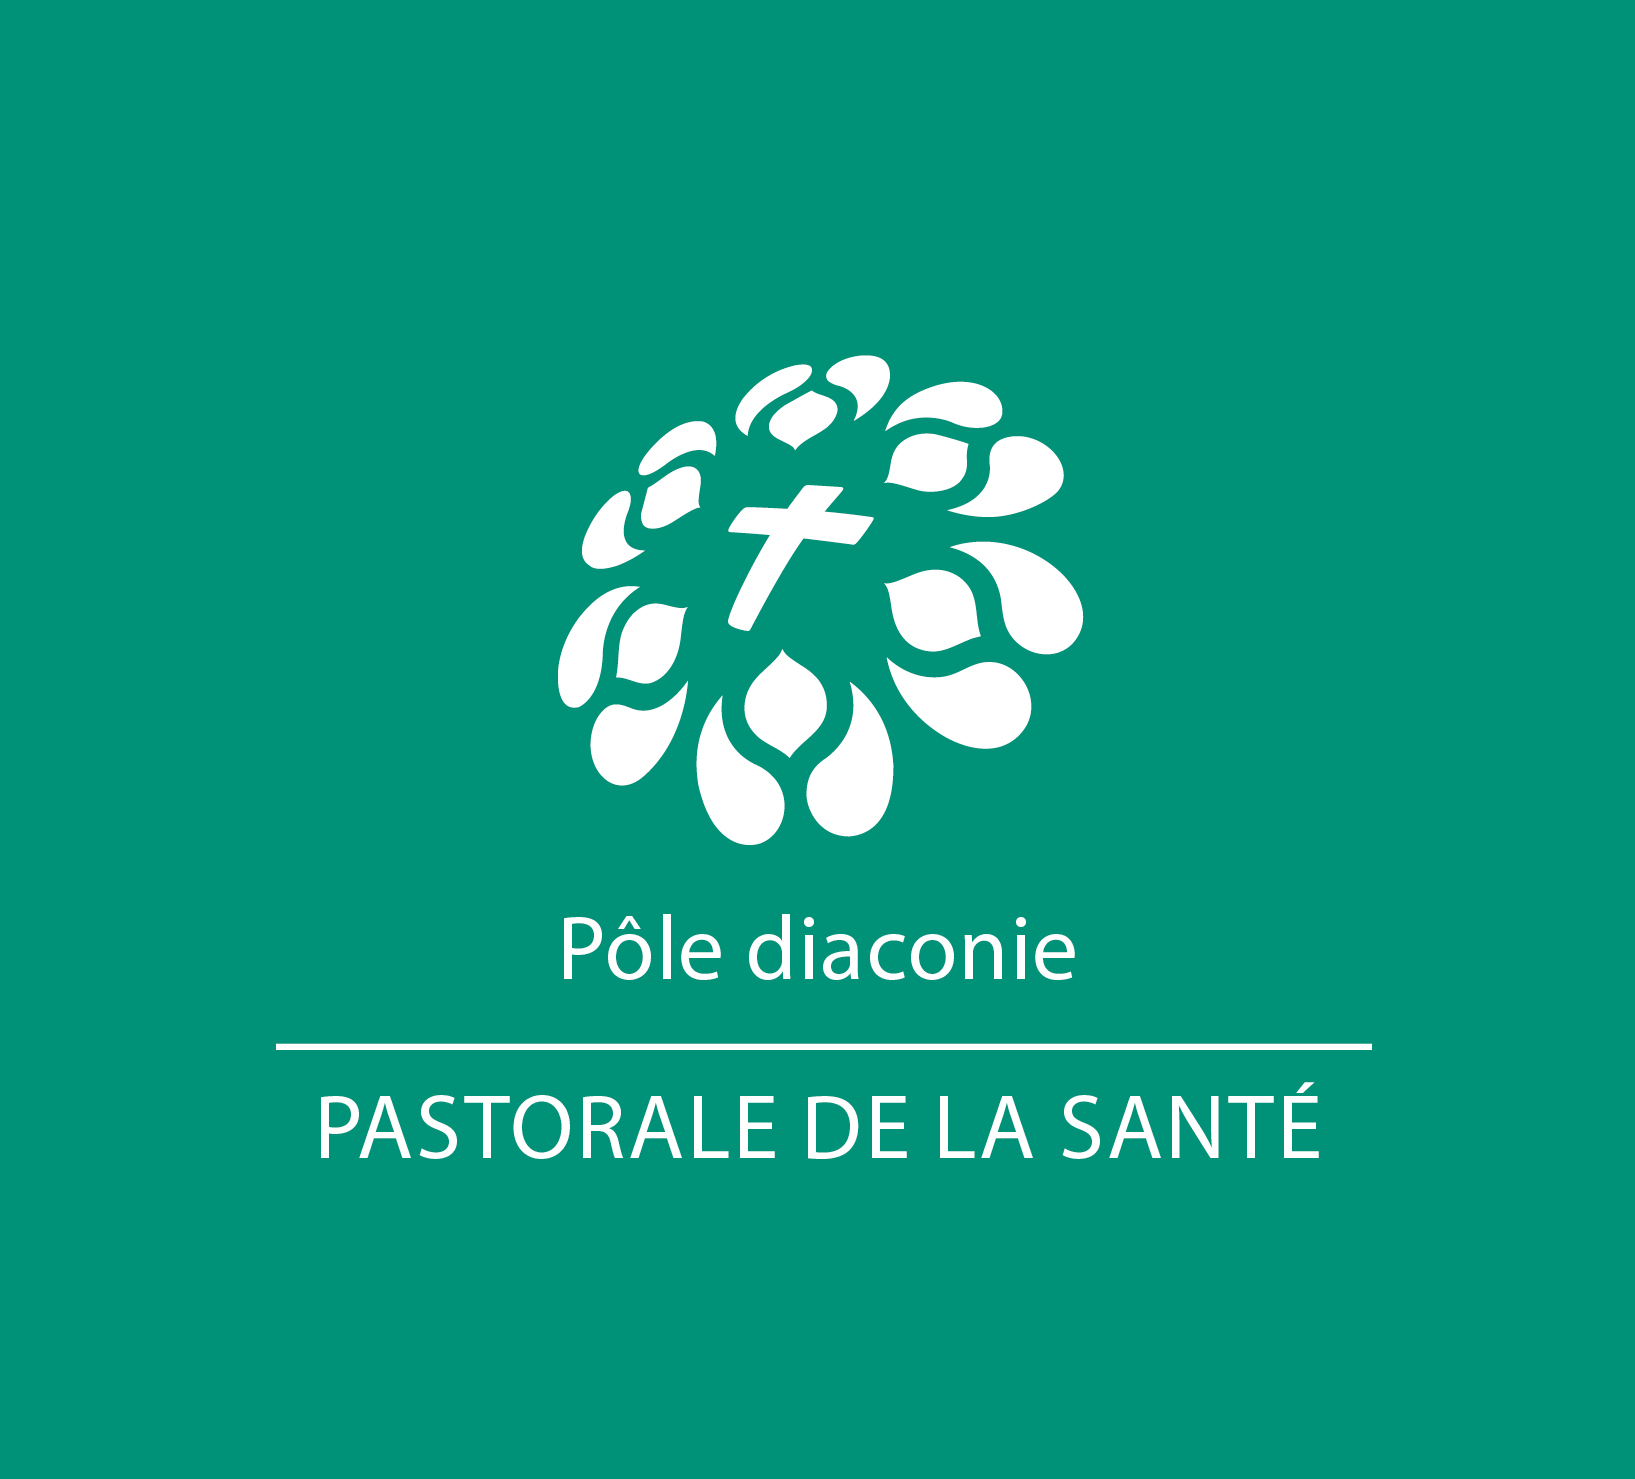 logo Pastorale de la Santé